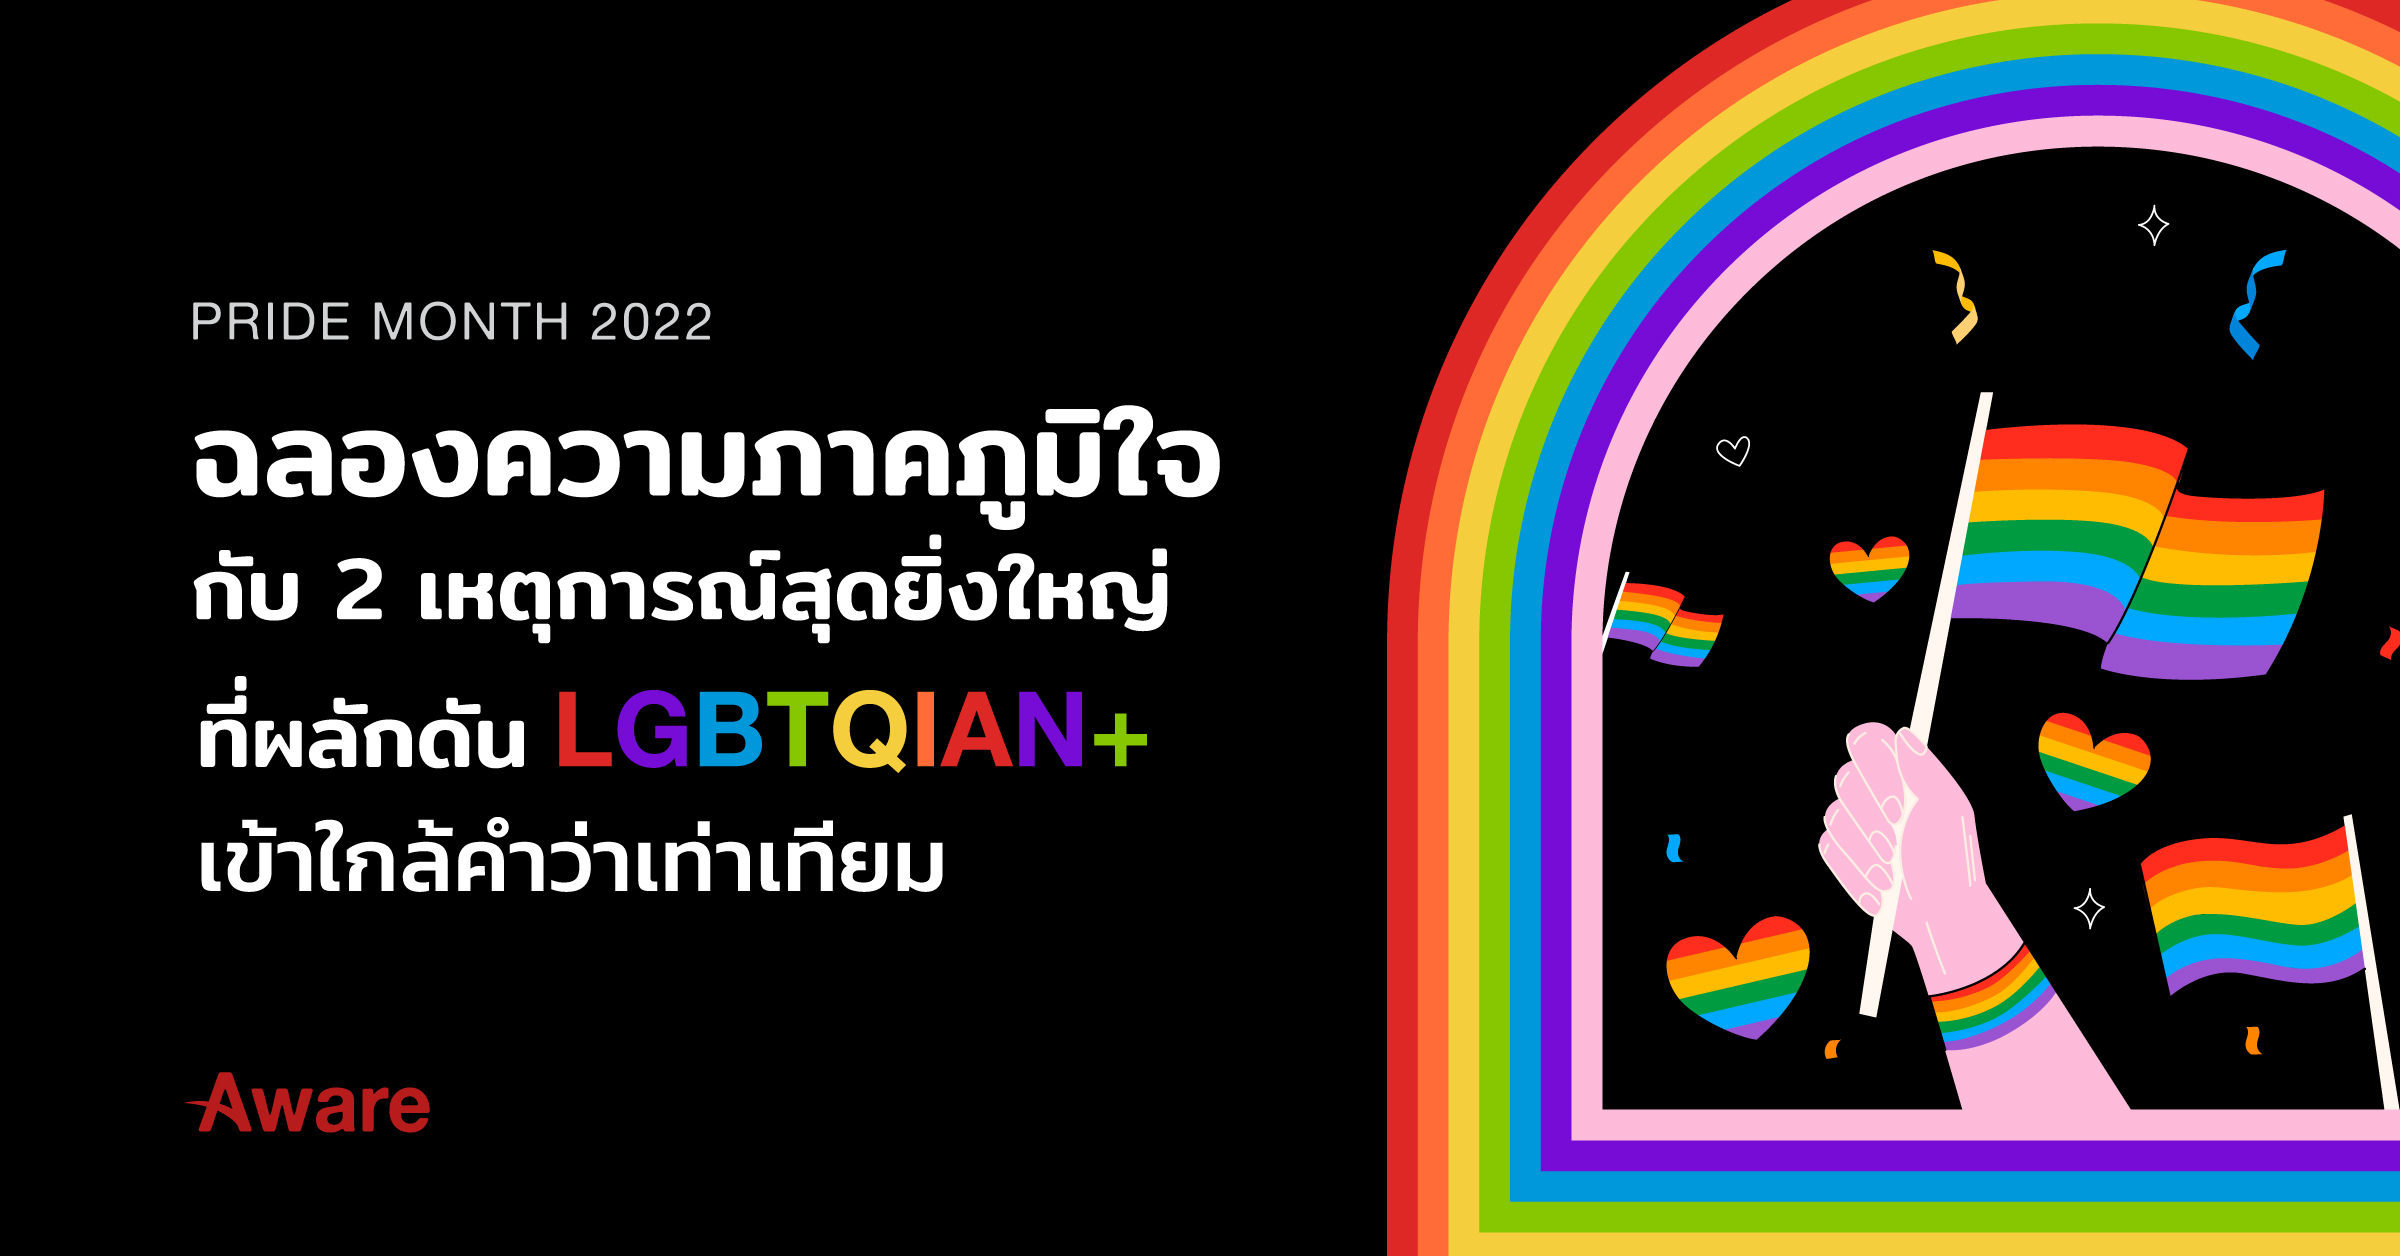 Pride Month 2022 ฉลองความภาคภูมิใจ กับ 2 เหตุการณ์สุดยิ่งใหญ่ที่ผลักดัน LGBTQIAN+ เข้าใกล้คำว่าเท่าเทียม